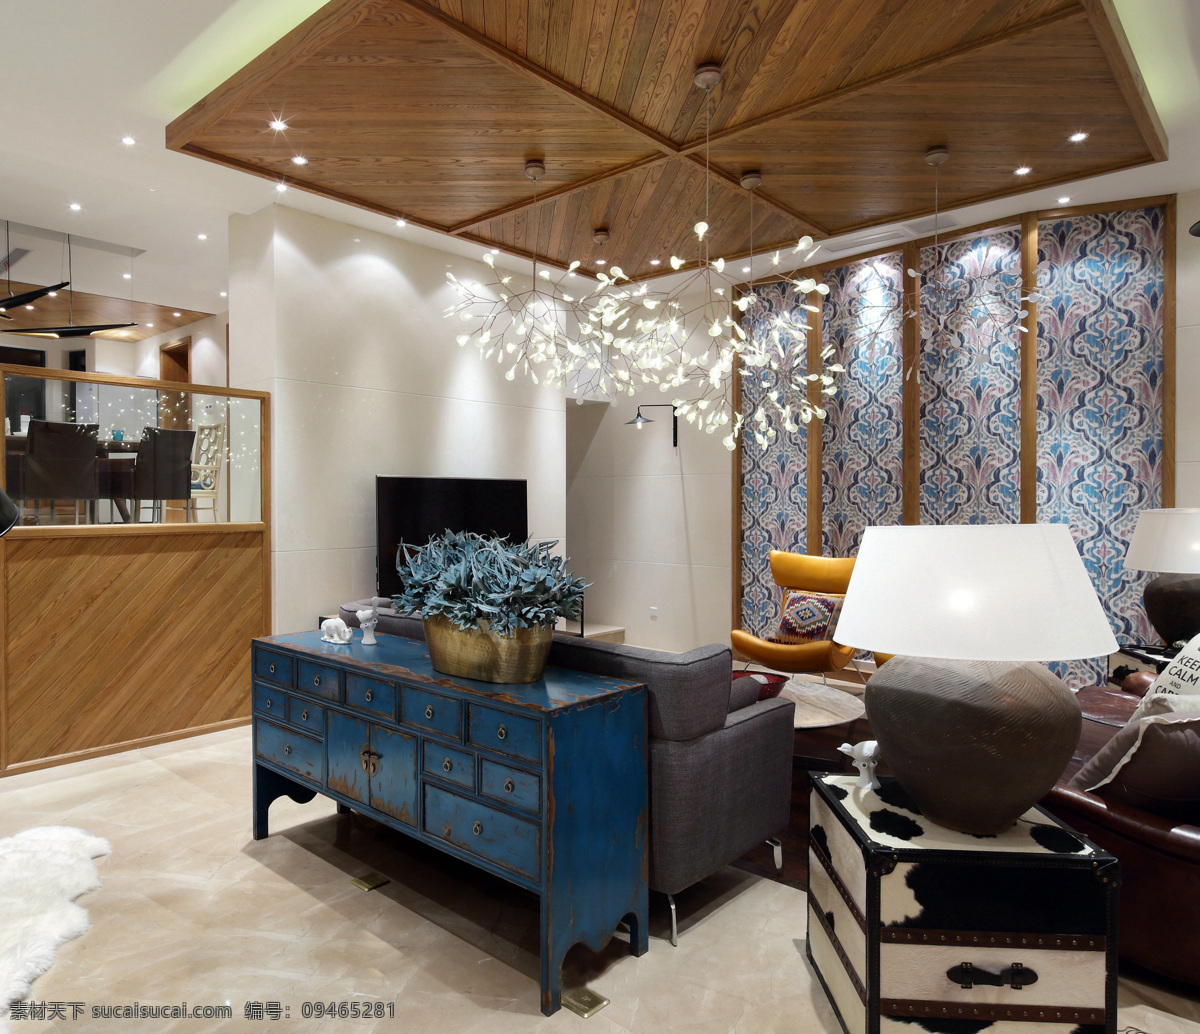 简约 客厅 方形 吊顶 装修 效果图 长方形茶几 窗户 蓝色窗帘 落地窗 米色沙发 台灯